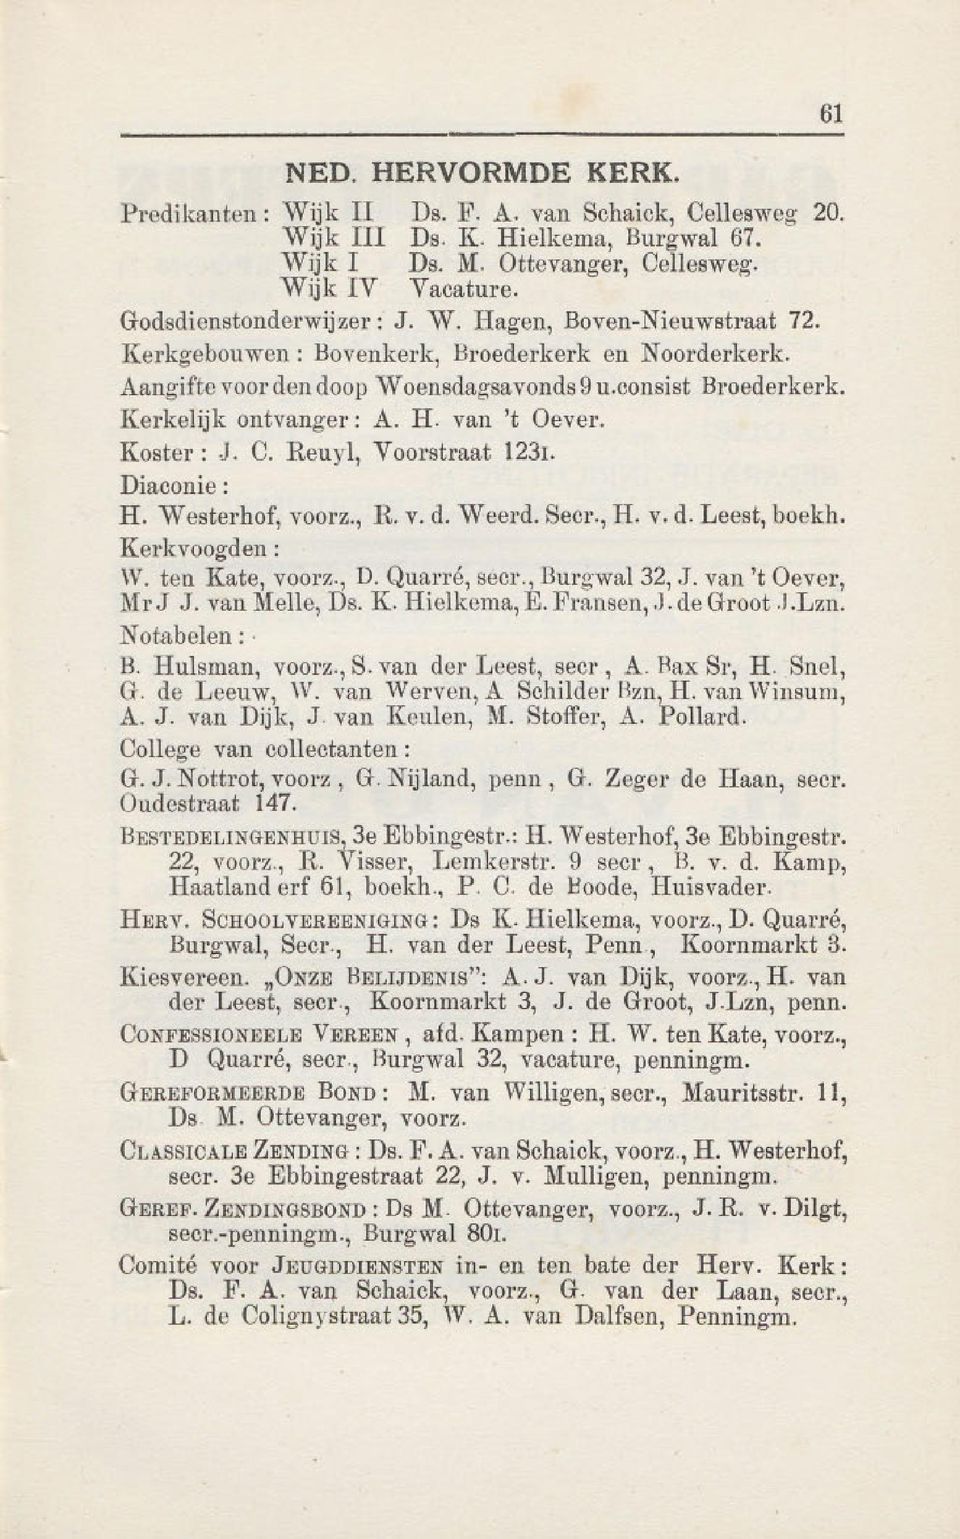 Koster: J. O. Reuyl, Voorstraat 1231. Diaconie: H. Westerhof, voorz., R. v. d. WeeI'd. Secr., H. v. d. Leest, boekh. Kerkvoogden : W. ten Kate, voorz., D. Quarre, secr., Burgwa132,.J. van 't Oever, Mr J J.